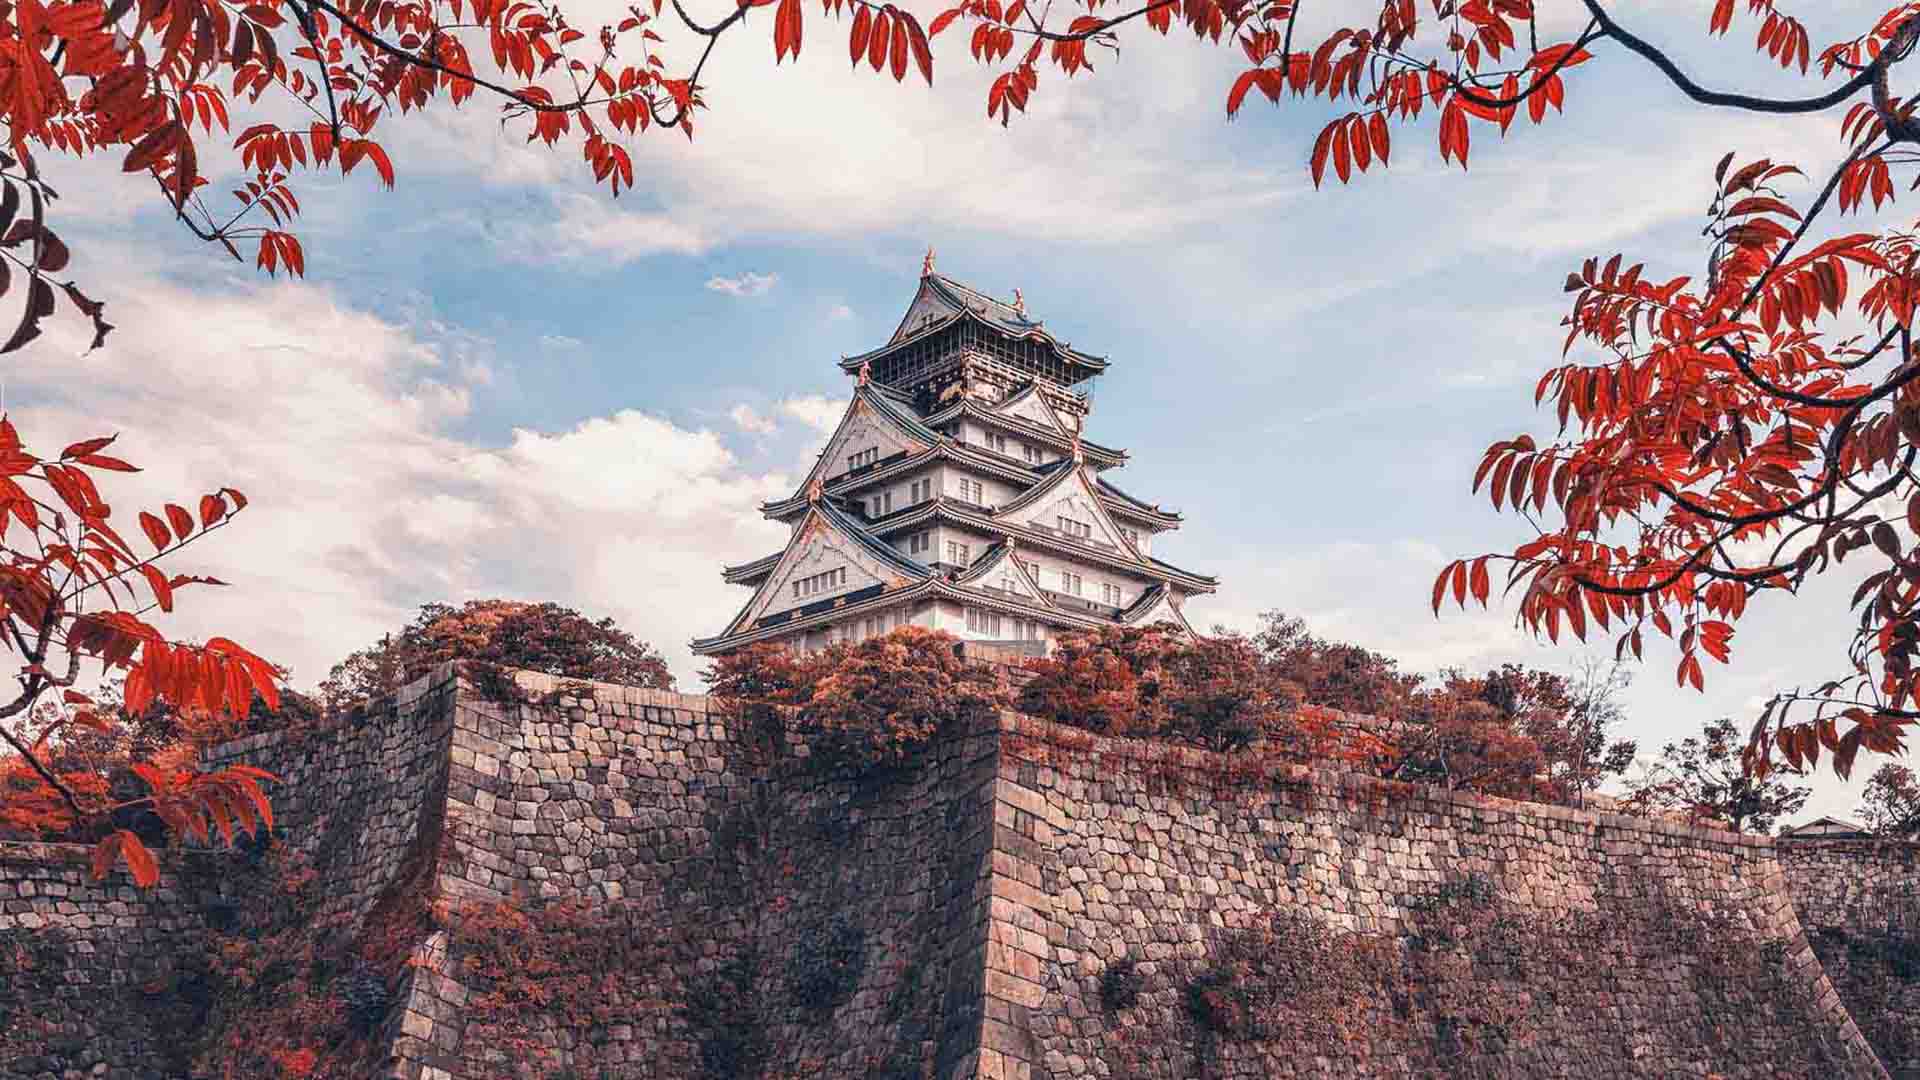 वैश्विक पर्यटन प्रतिस्पर्धात्मकता रिपोर्ट में जापान को तीसरा स्थान प्राप्त हुआ